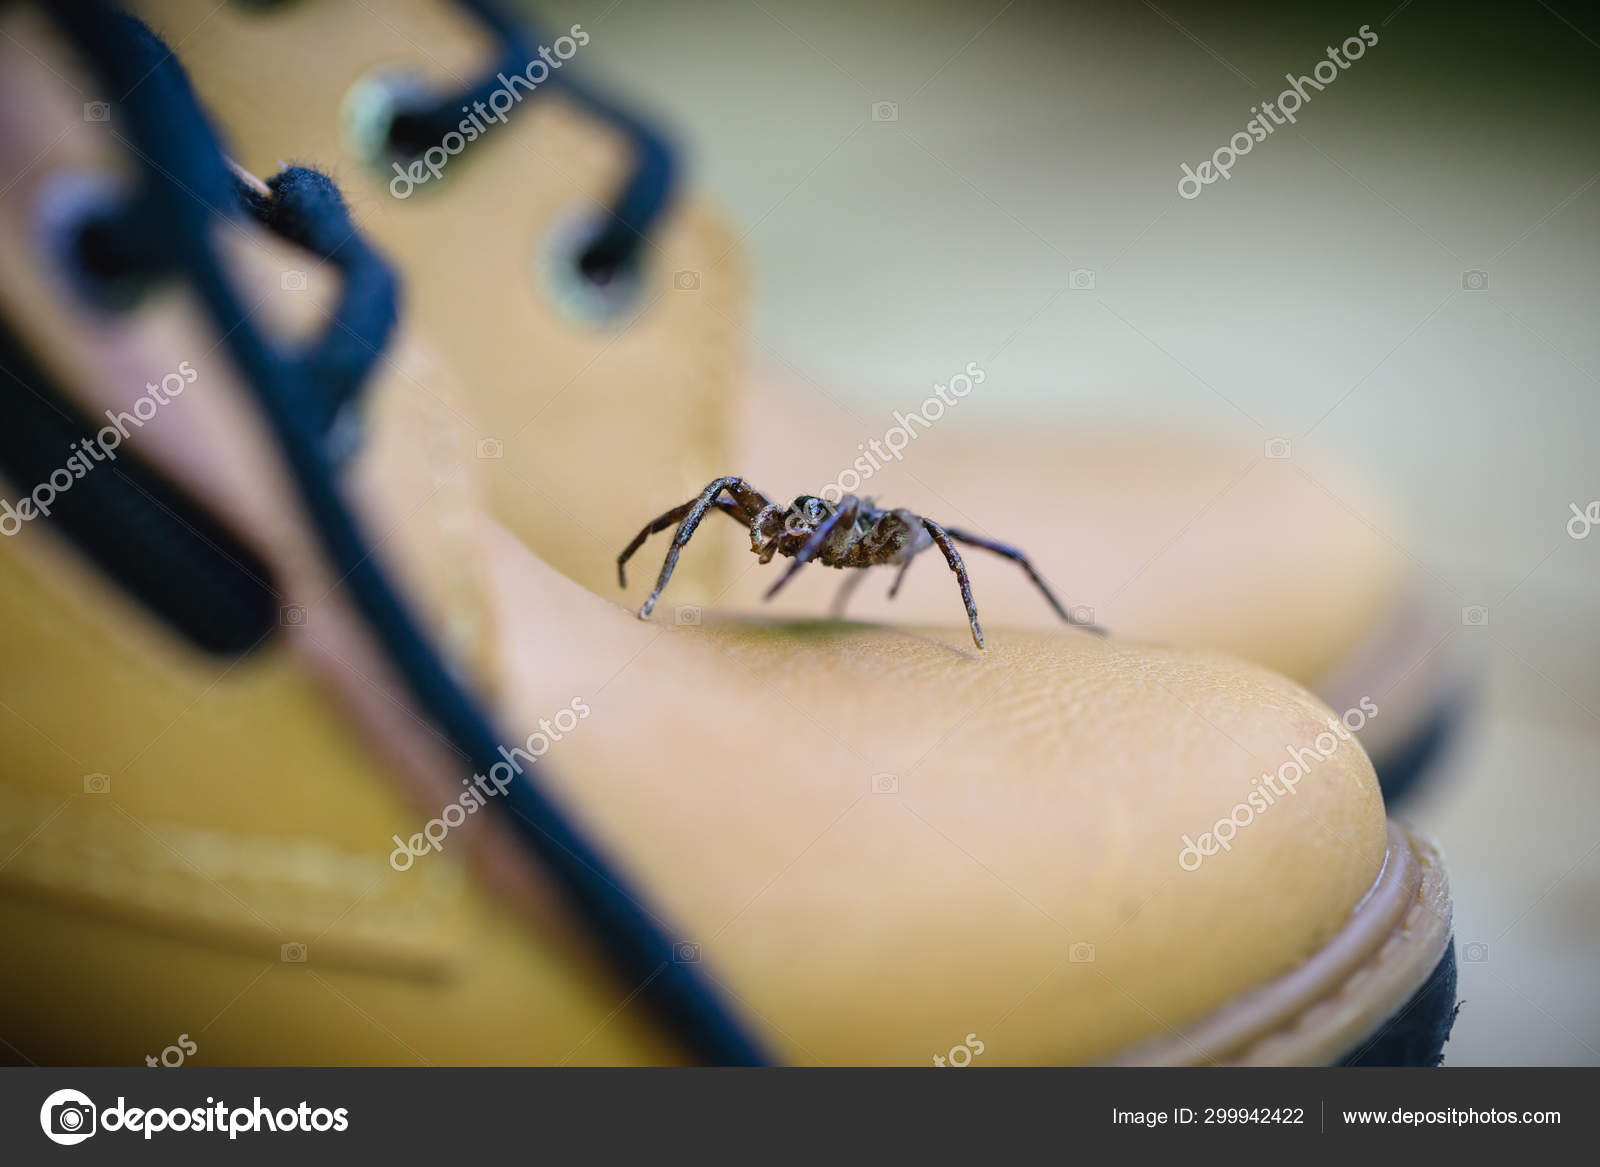 Giftig edderkop op i en støvle. Edderkoppepleje, frygt for edderkop. Storbarmet dyr. er en slægt af giftige spindler i Sicariidae familien kendt for deres nekrotiserende . — Stock-foto ©